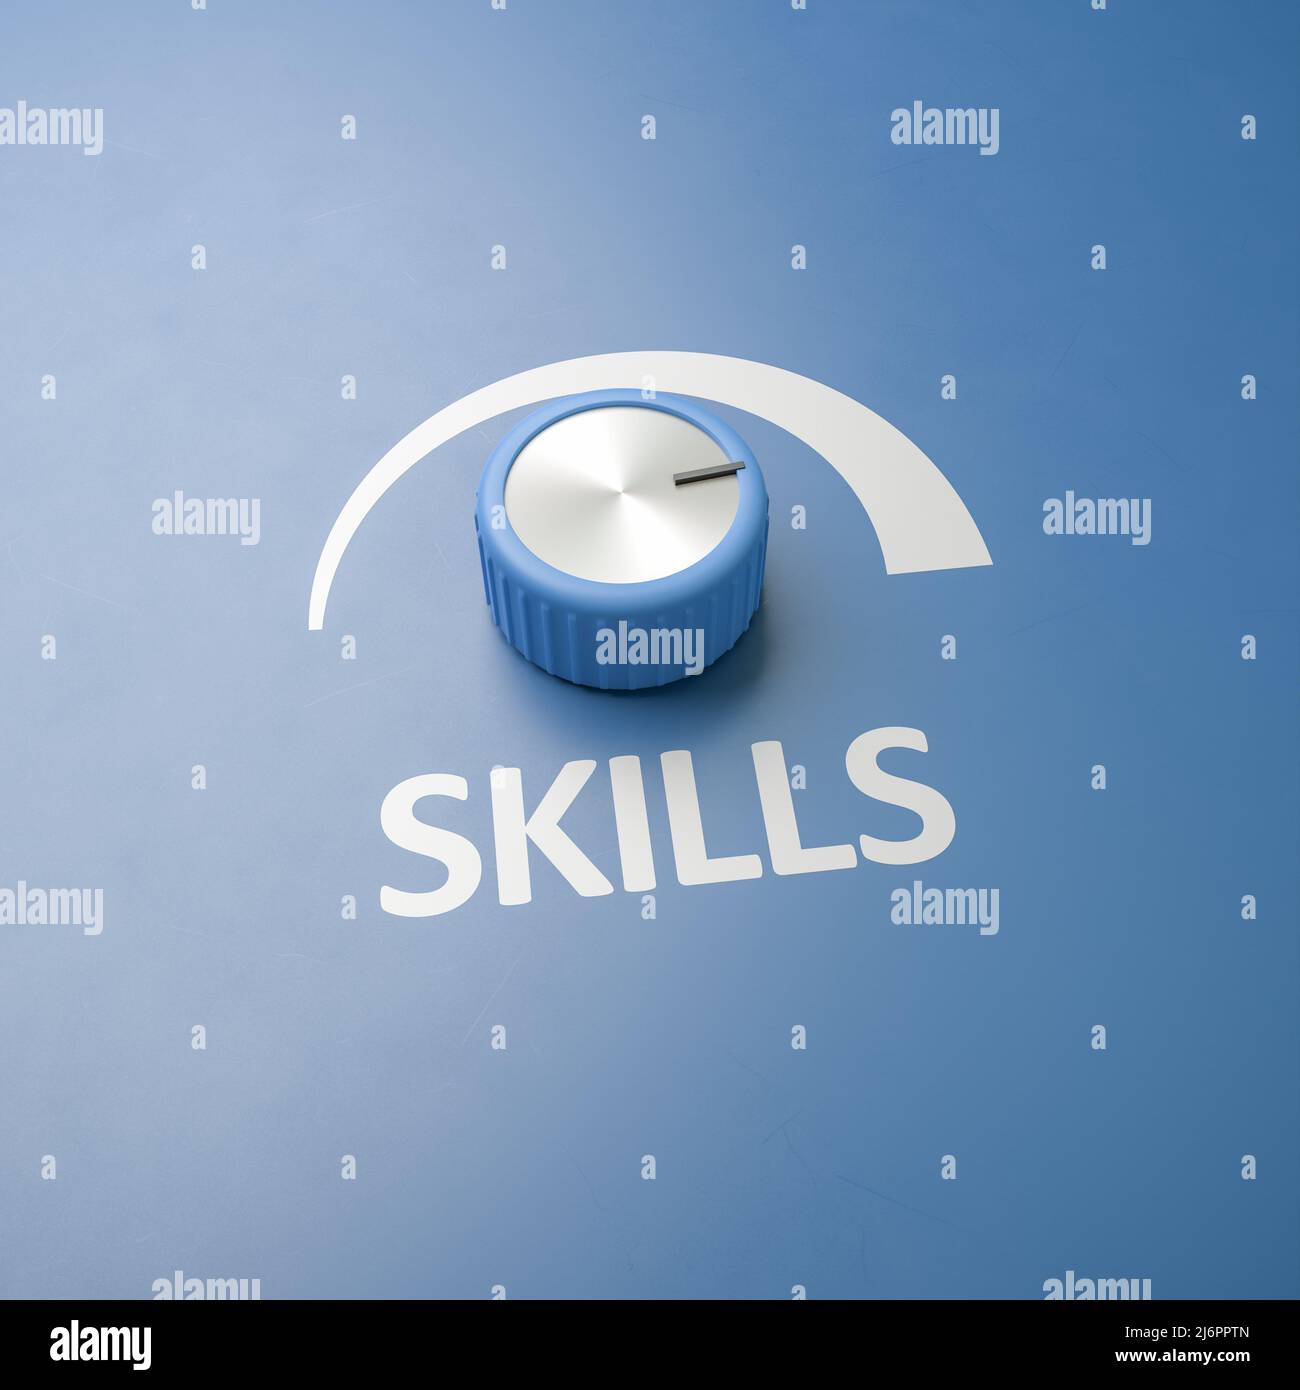 Blue Knob wurde mit dem Wort „Skills“ als Label auf die volle Stufe gestellt – Konzept für Maßnahmen zur Verbesserung von Skills. Platz zum besseren Zuschneiden kopieren Stockfoto